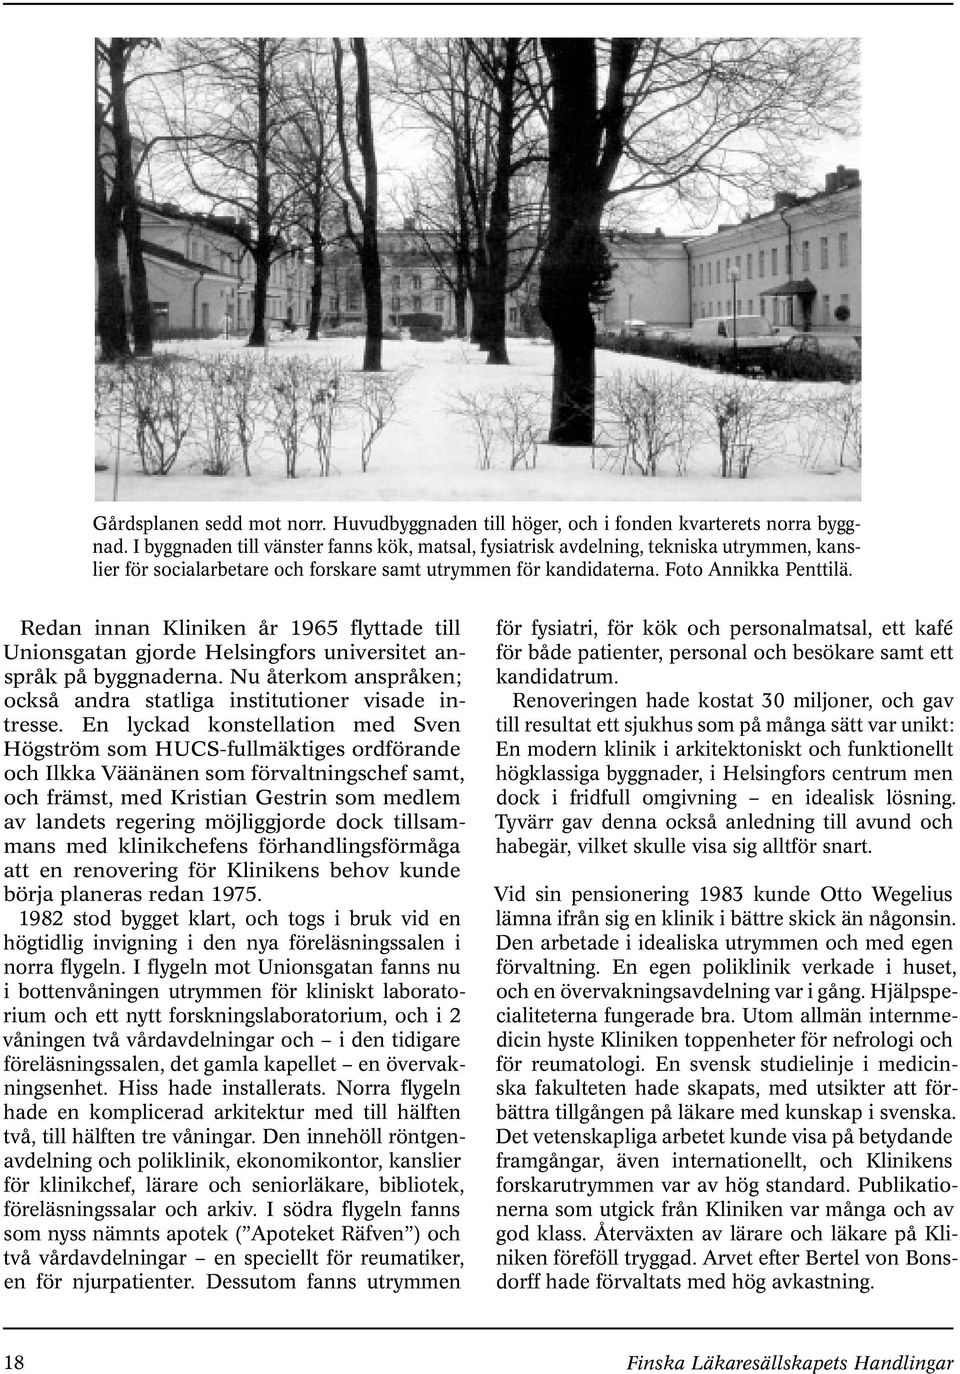 Redan innan Kliniken år 1965 flyttade till Unionsgatan gjorde Helsingfors universitet anspråk på byggnaderna. Nu återkom anspråken; också andra statliga institutioner visade intresse.